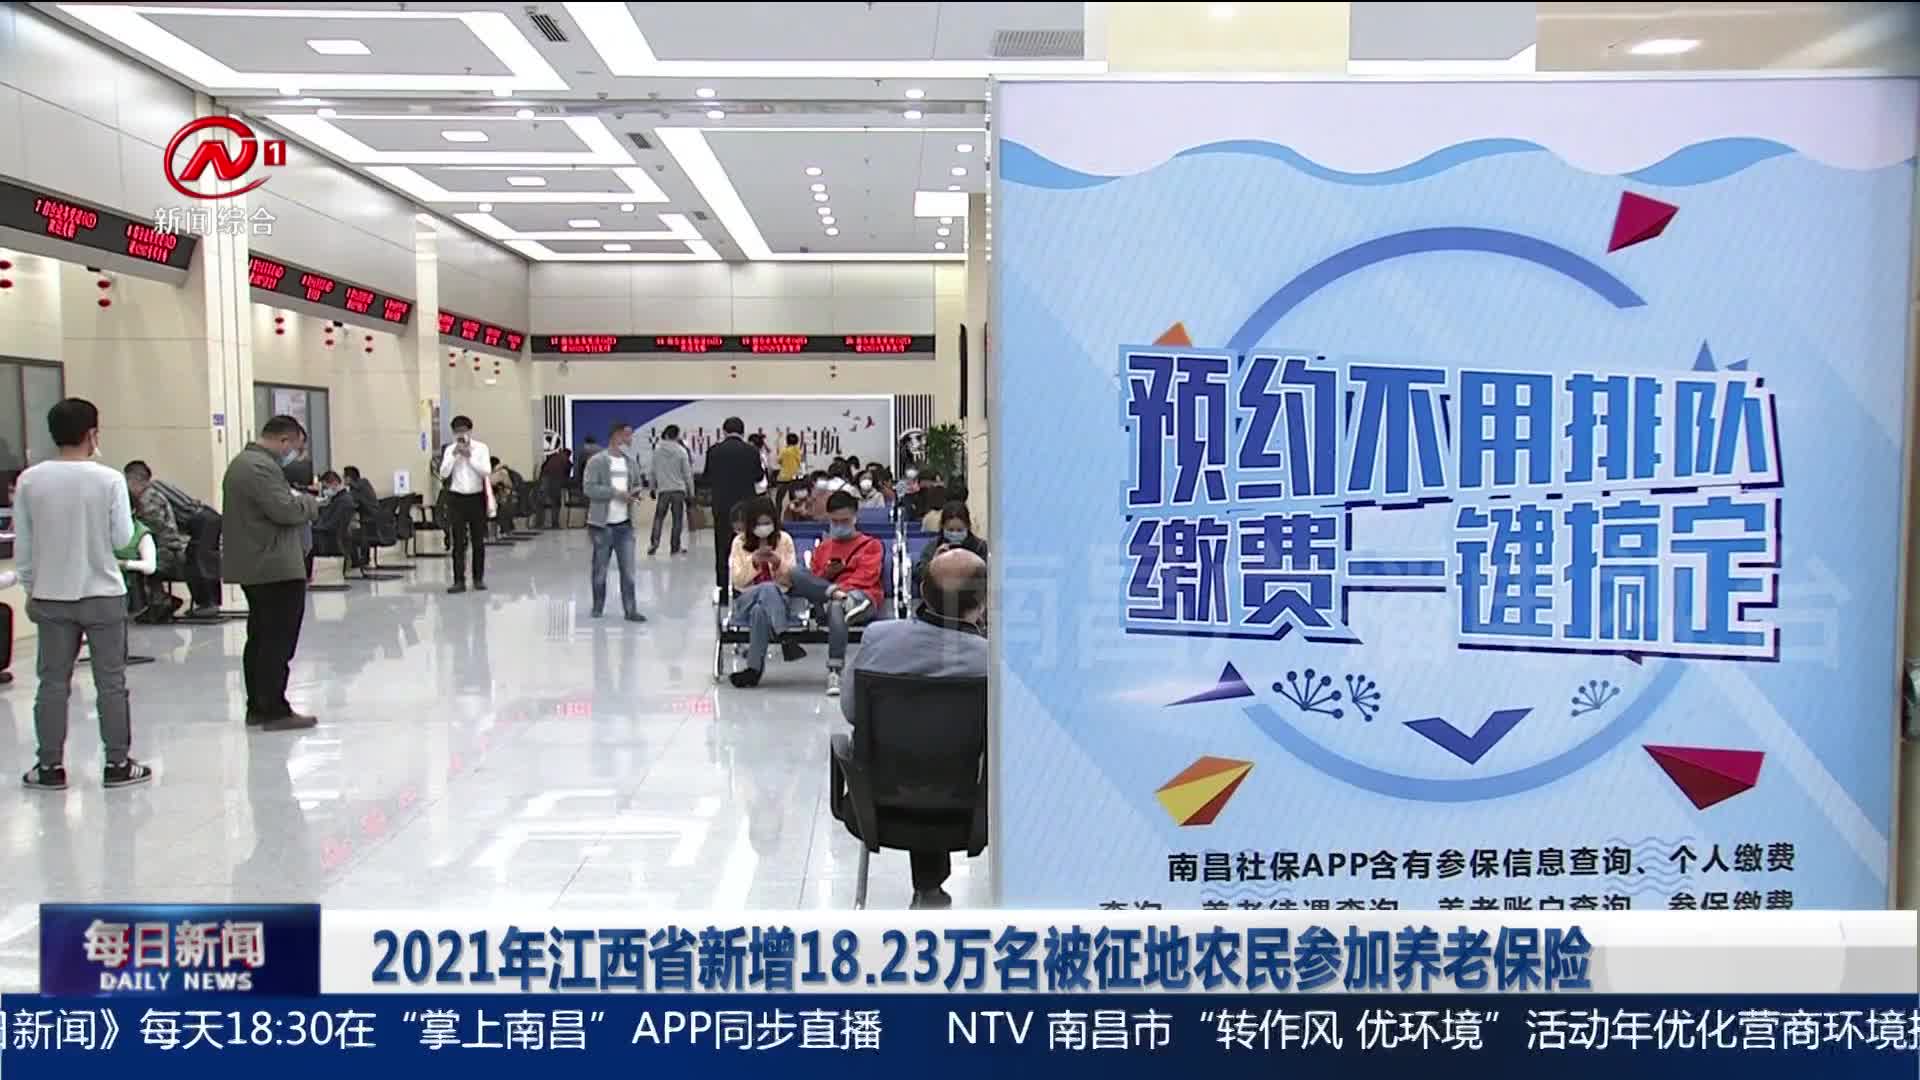 2021年江西省新增18.23万名被征地农民参加养老保险